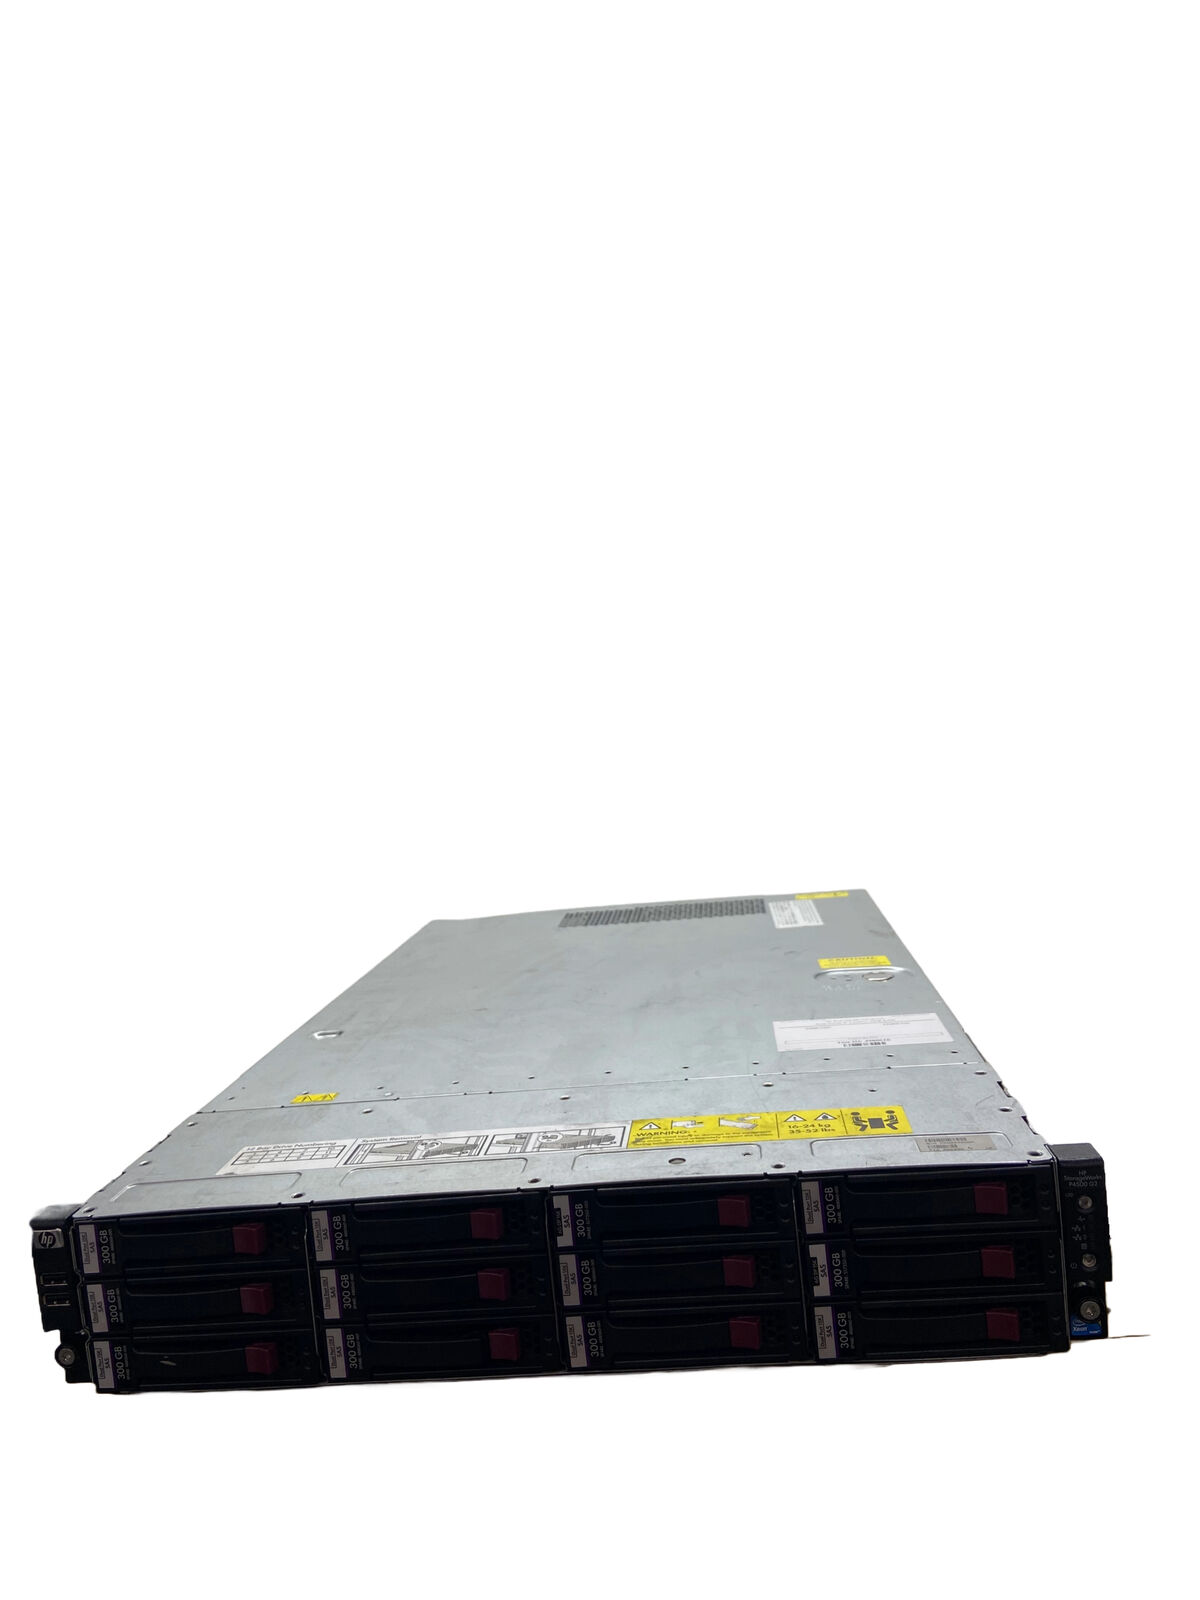 HP StorageWorks P4500 G2 Xeon E5520 @2.27GHz 16GB RAM 12x Bays NO HDDs 2x 750W